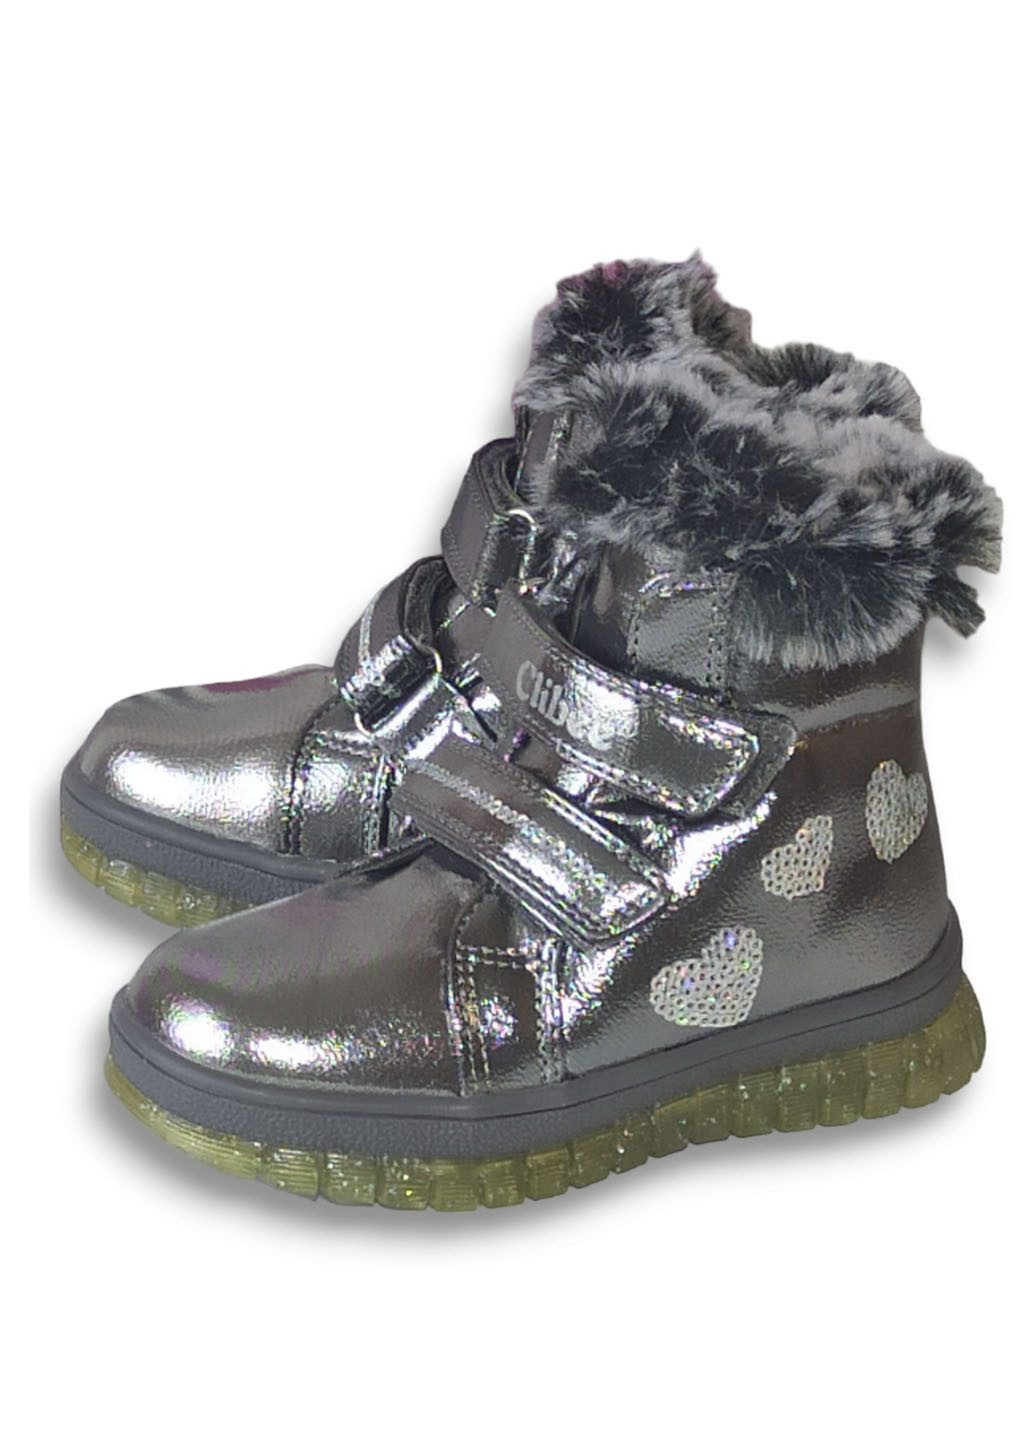 Серебряные повседневные зимние зимние ботинки для девочки на овчине н220 23-15,3см 24-15,8см 25-16,7см Clibee